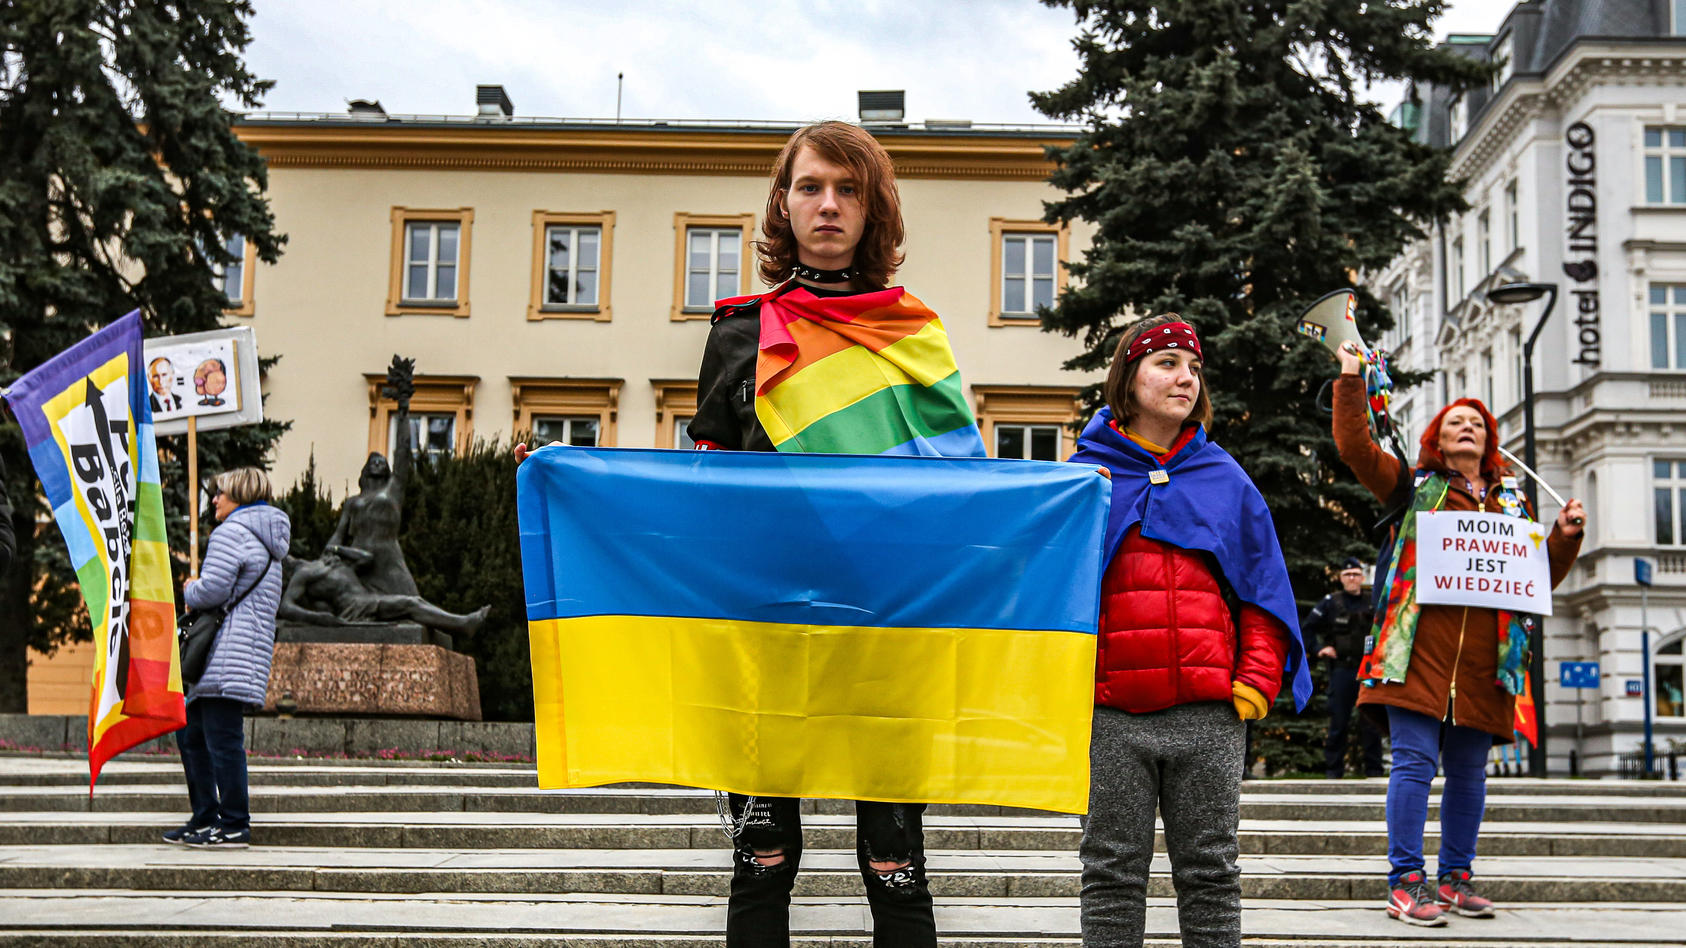 Ein junger Aktivist im Vordergrund mit einem ernsten Gesichtsausdruck, einer Ukraineflagge in der Hand und einer Regenbogenflagge um den Körper gewickelt.